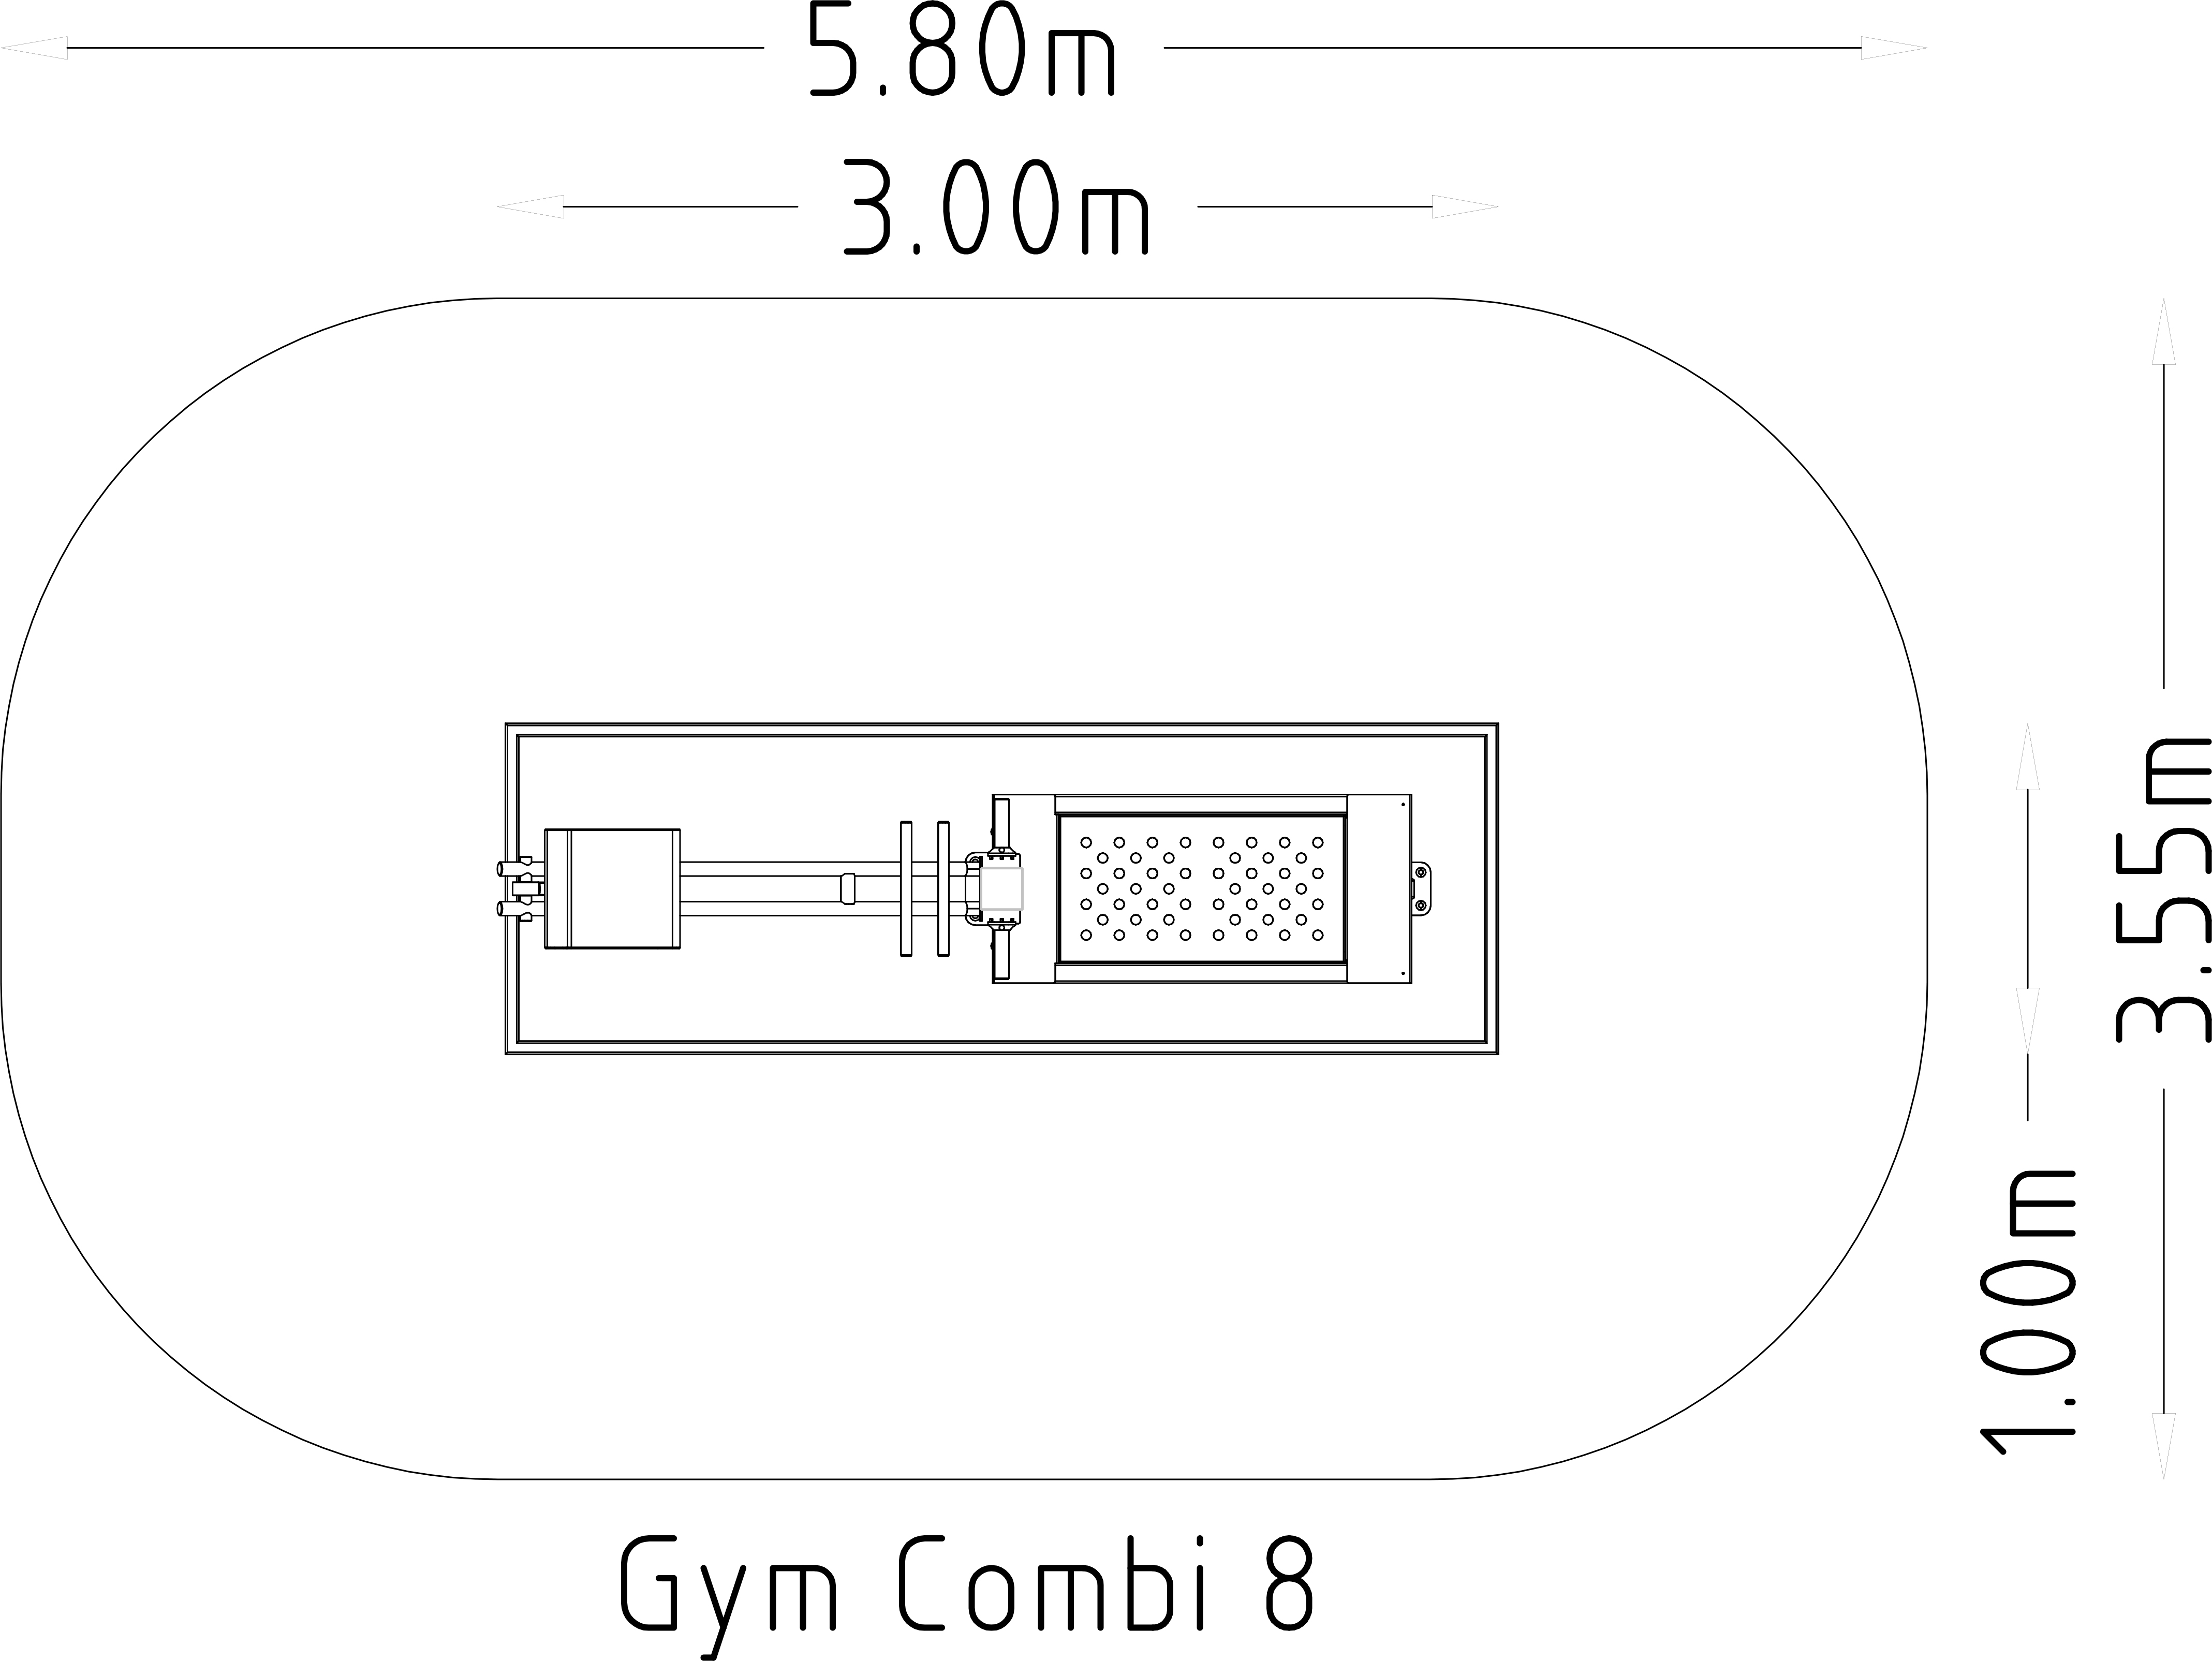 Denfit Gym Combi 8